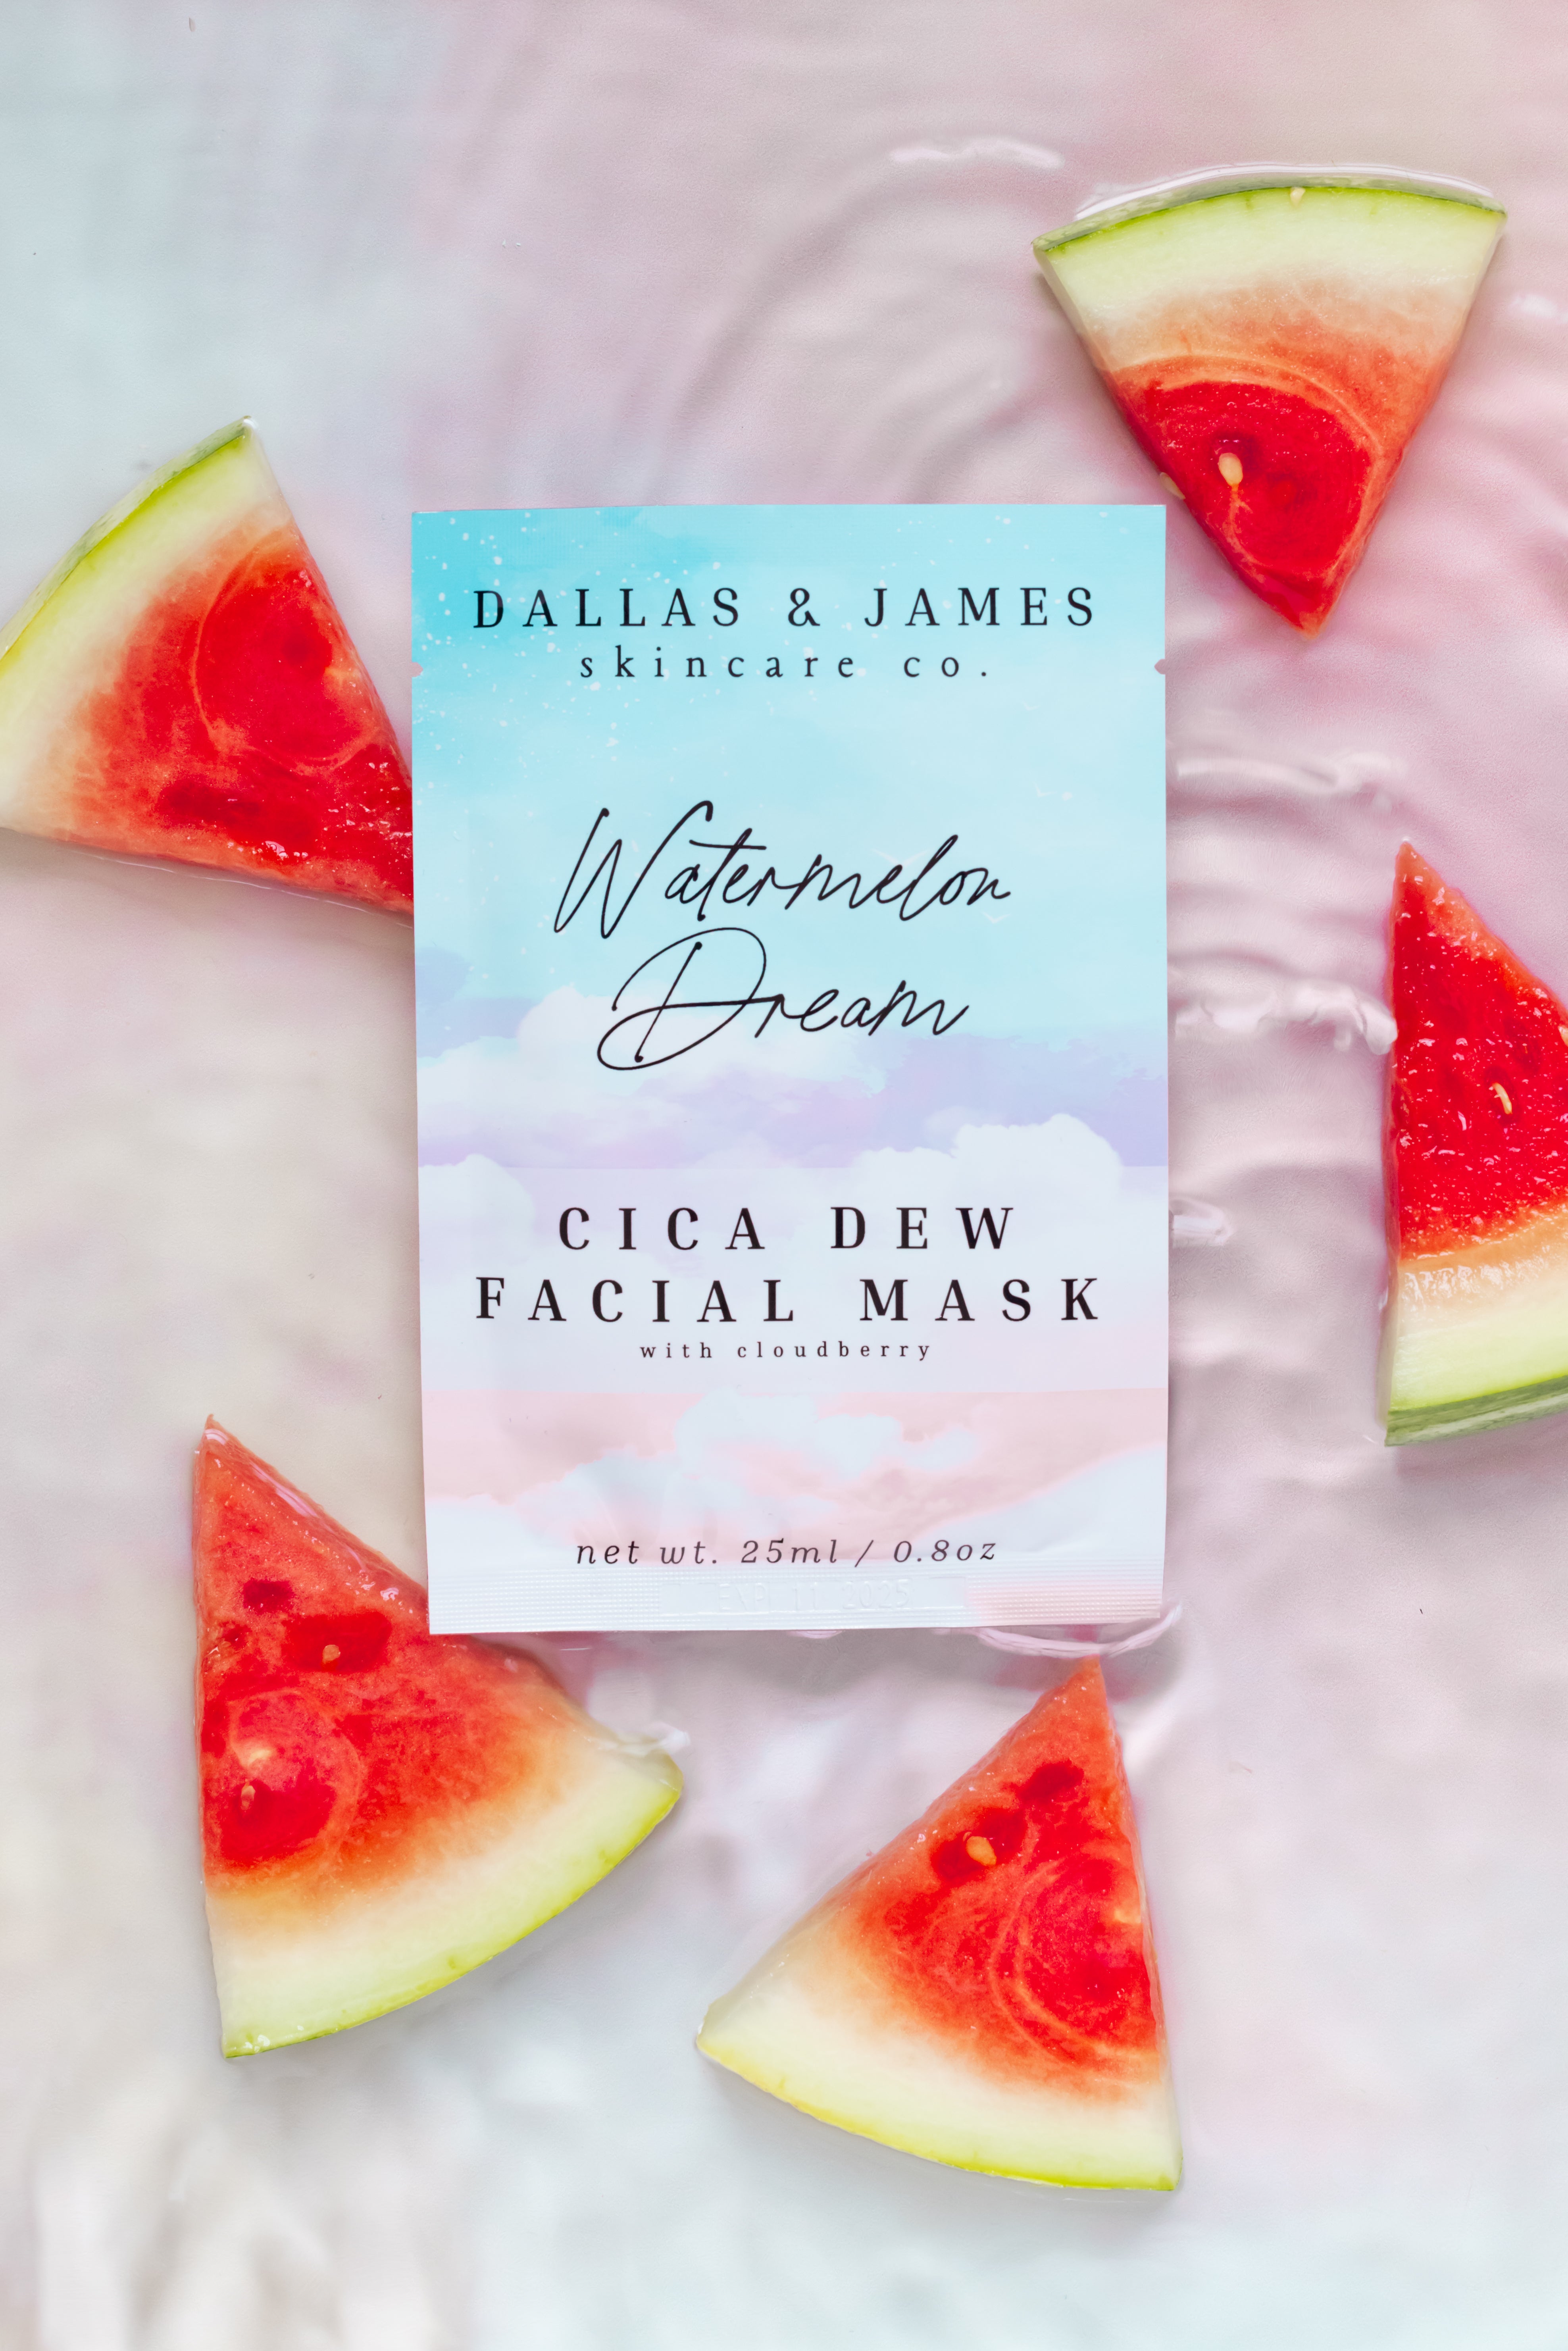 Dallas & James Skincare Co. Watermelon Dream Cica Dew Facial Mask